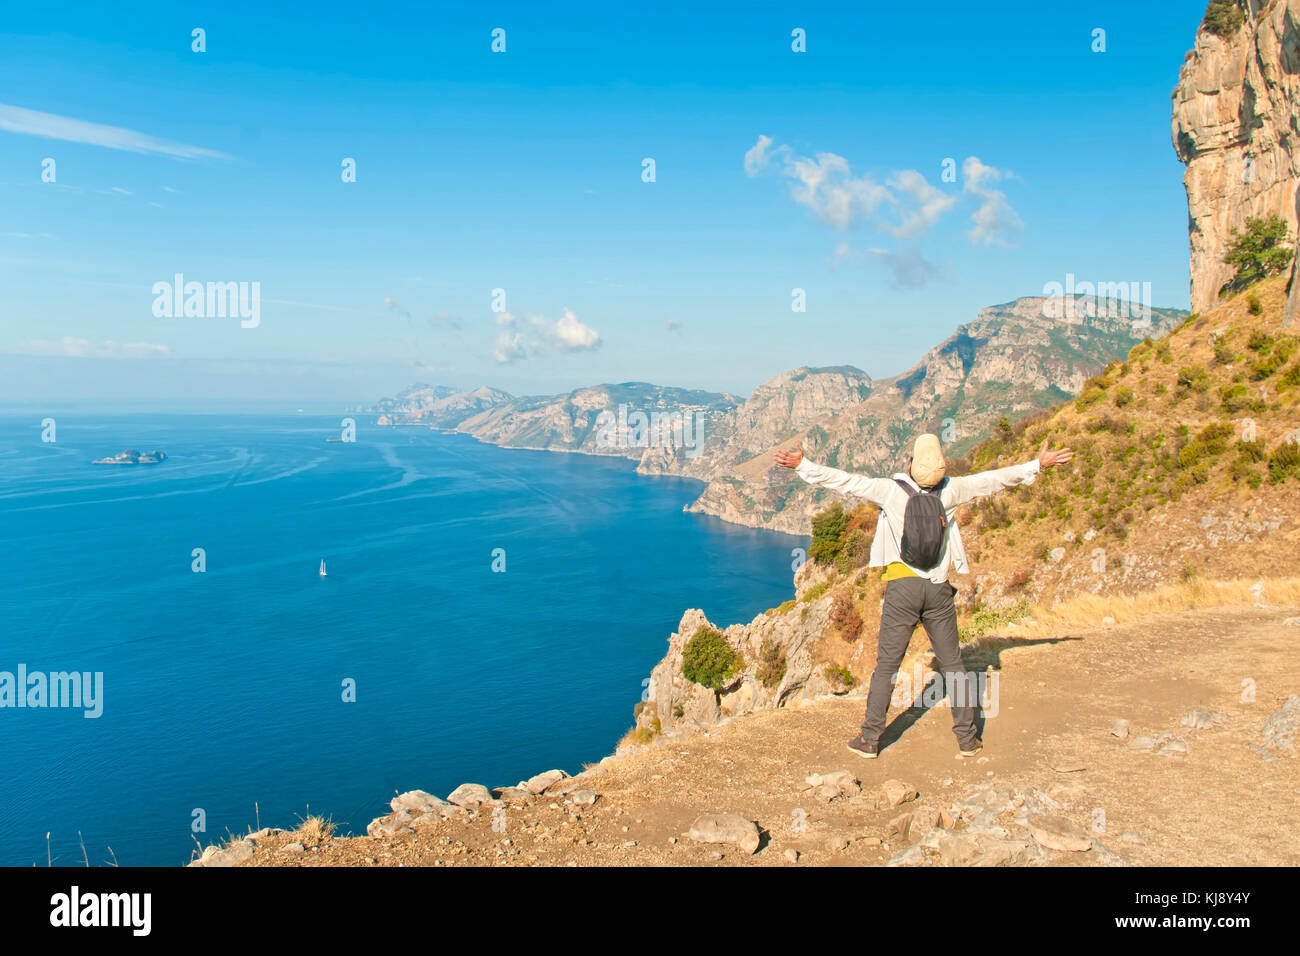 Jeune homme en chemise blanche et touristique cap debout à bord de la falaise avec ses bras ouverts à la recherche en mer et montagnes sur le chemin des dieux, côte amalfitaine Banque D'Images